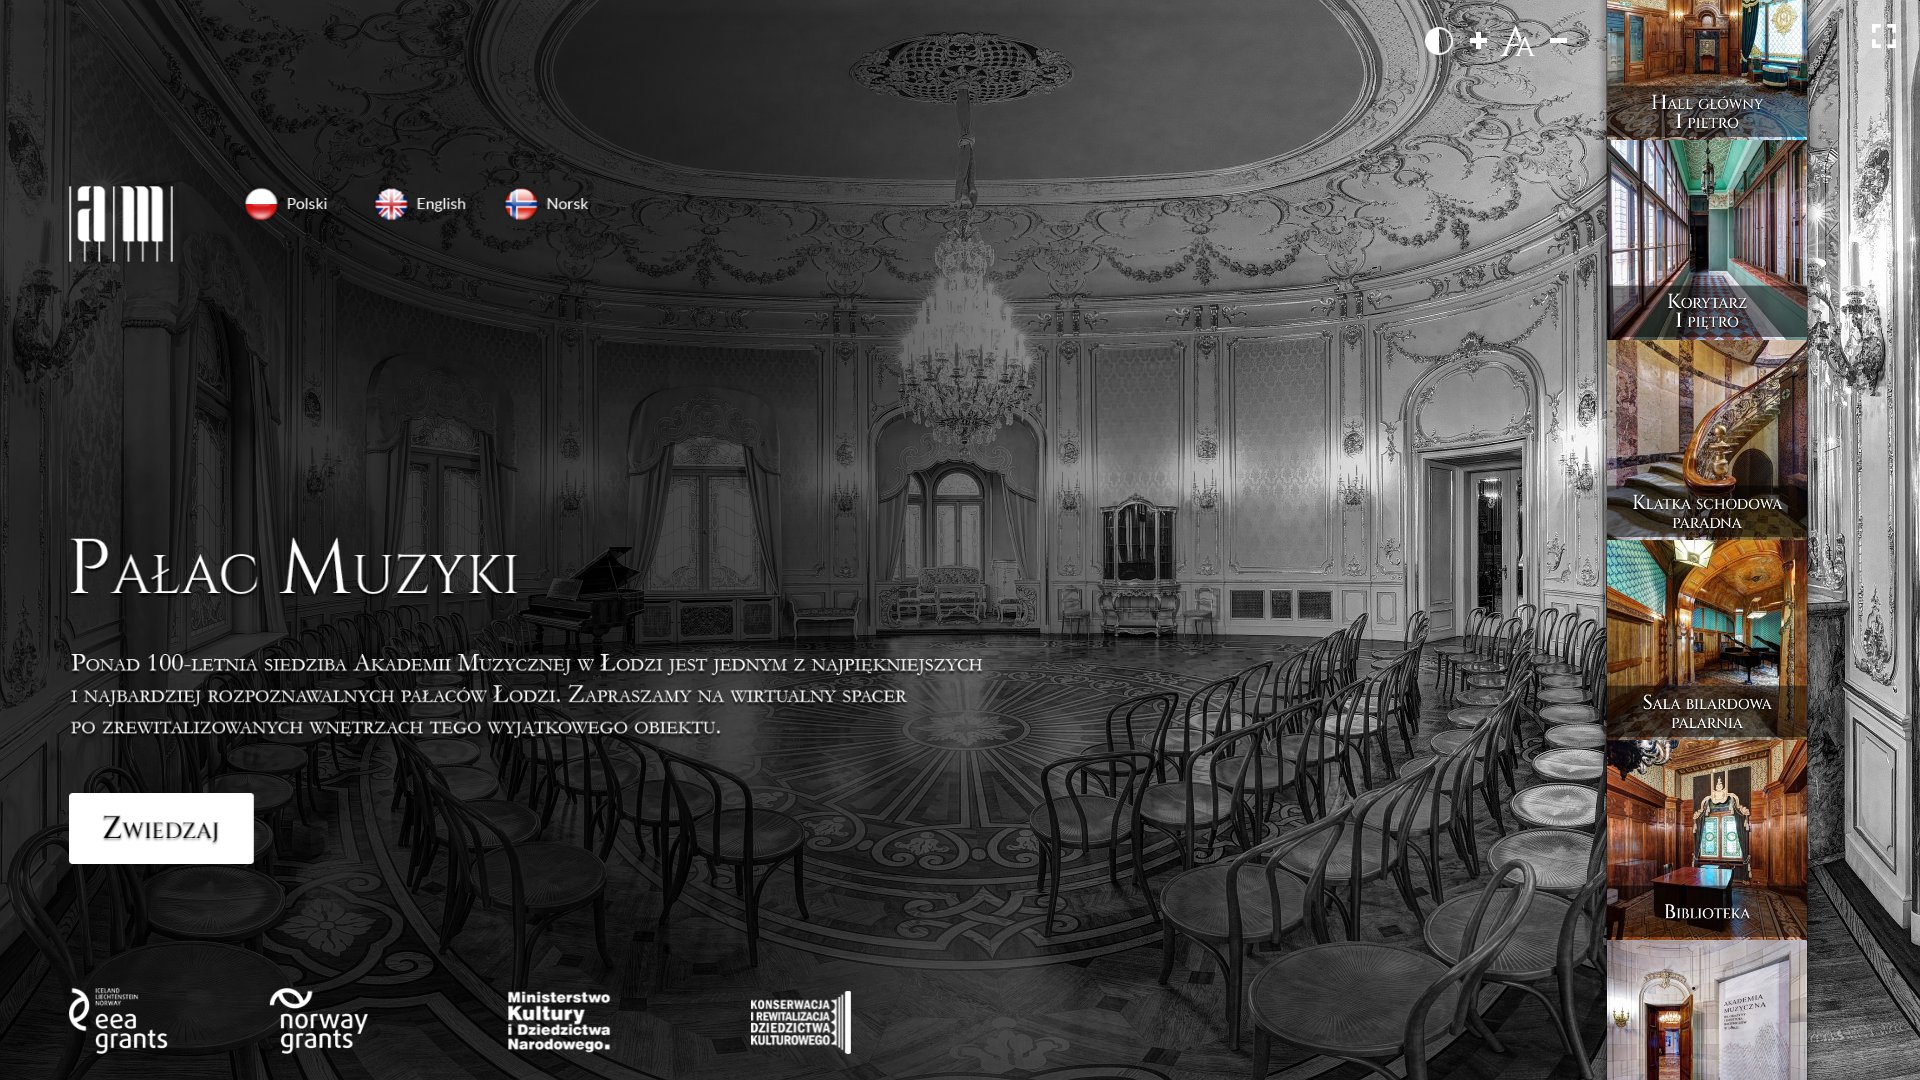 Pałac Muzyki - rekonstrukcja wirtualnego spaceru